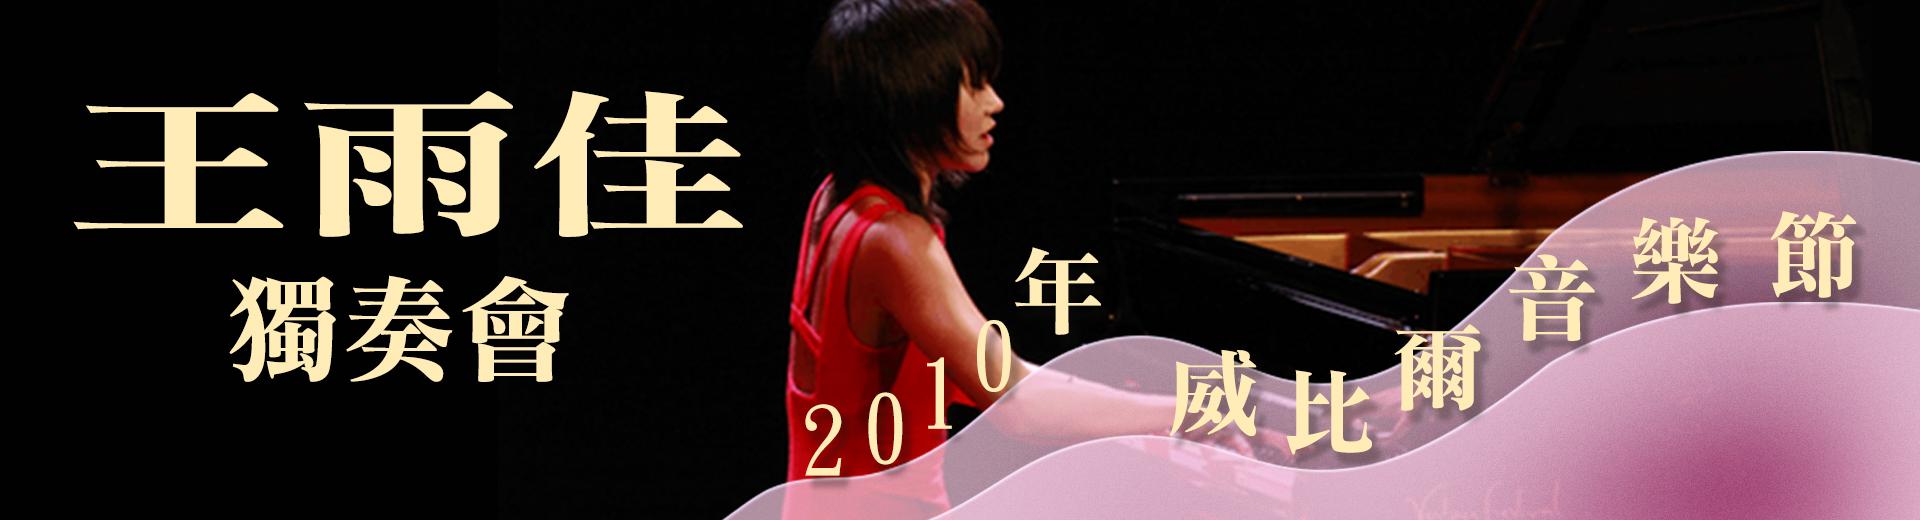 王羽佳獨奏會-2010年威比爾音樂節Recital Yuja Wang